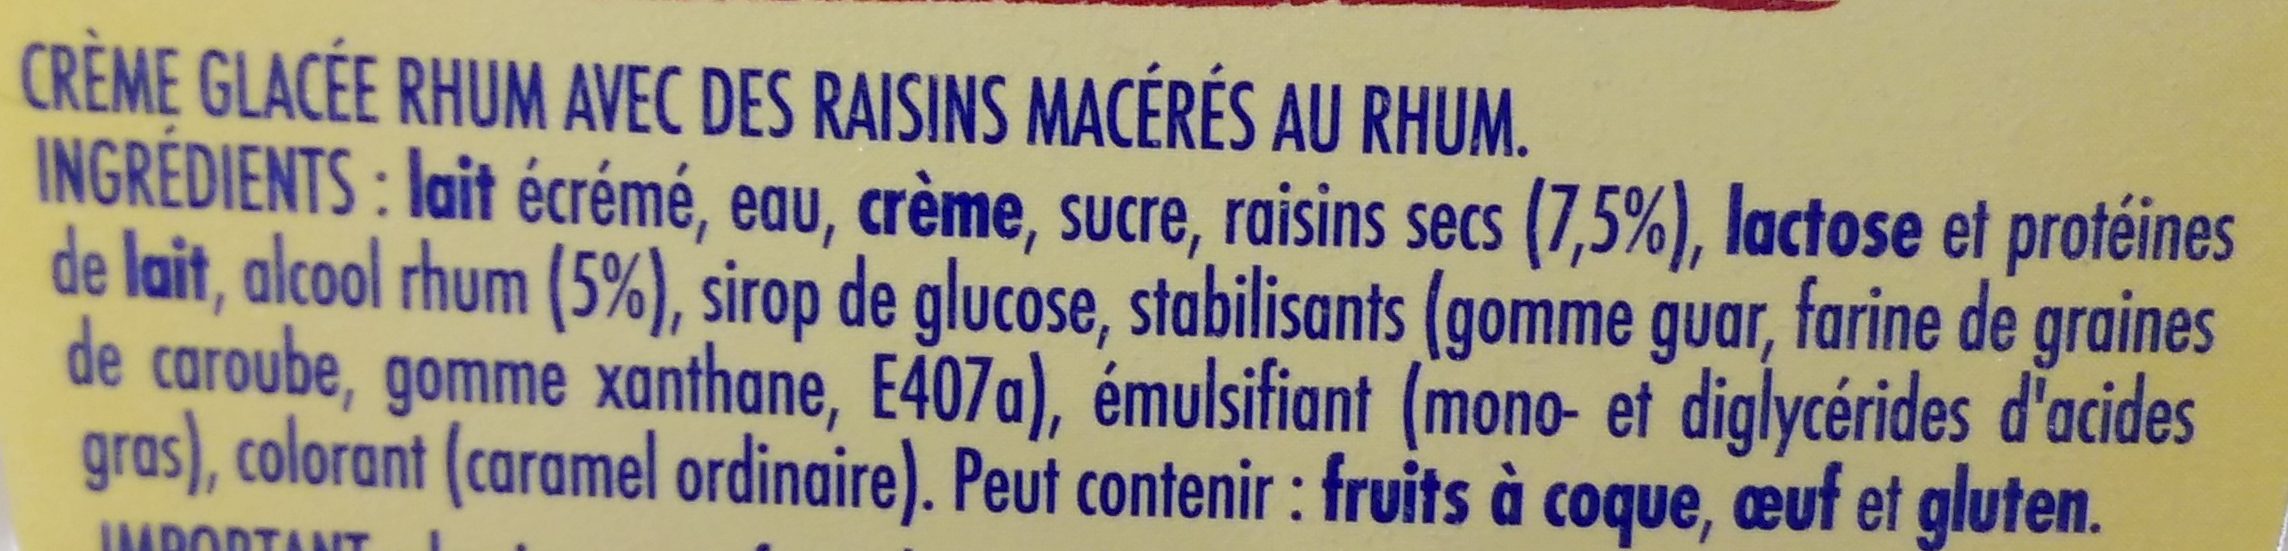 Rhum raisins - Ingrédients